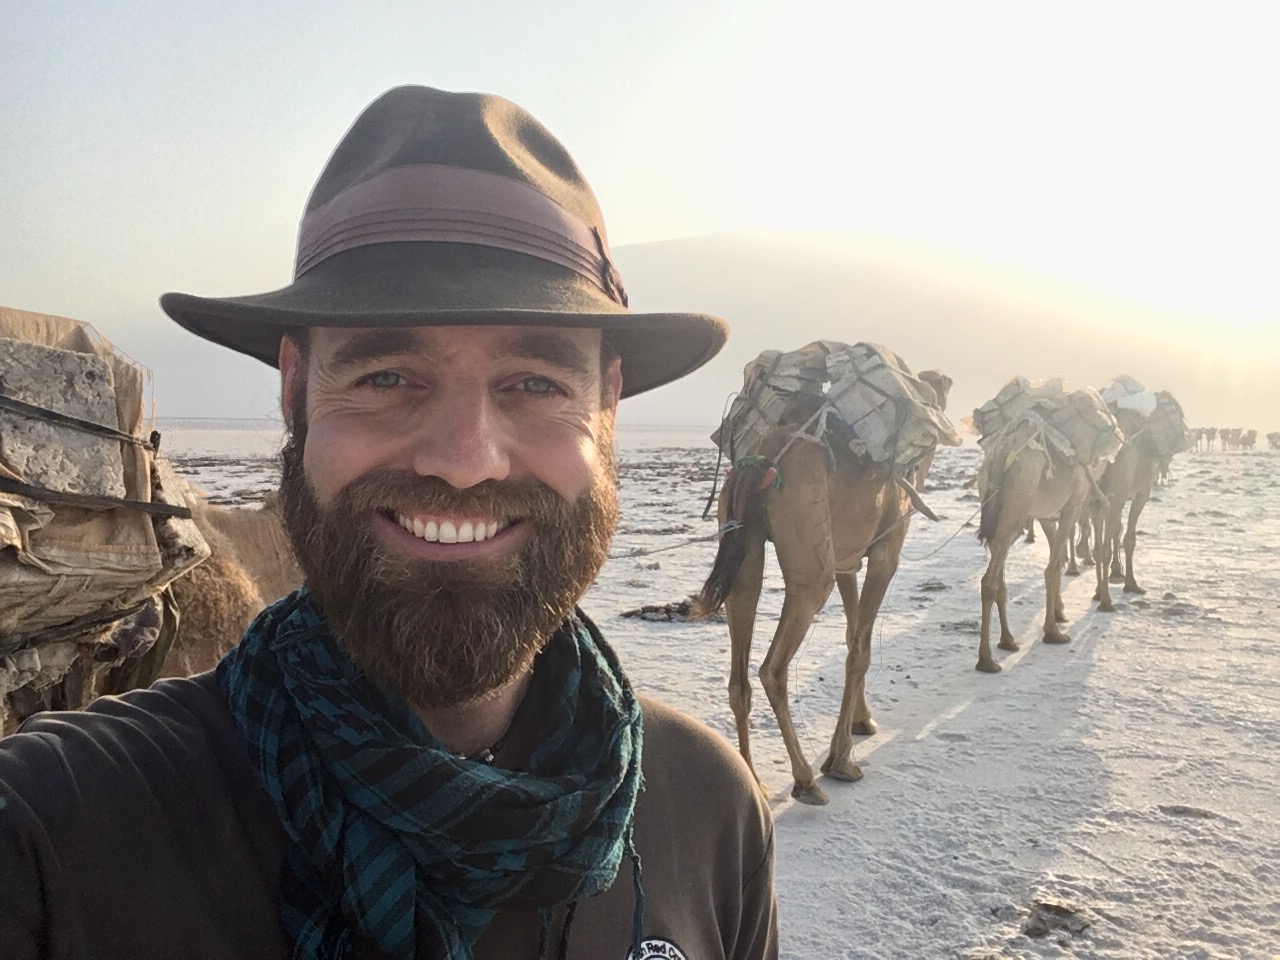 Anh Pedersen ở Ethiopia năm 2017 (Ảnh: Đăng dưới sự cho phép của anh Thor Pedersen)